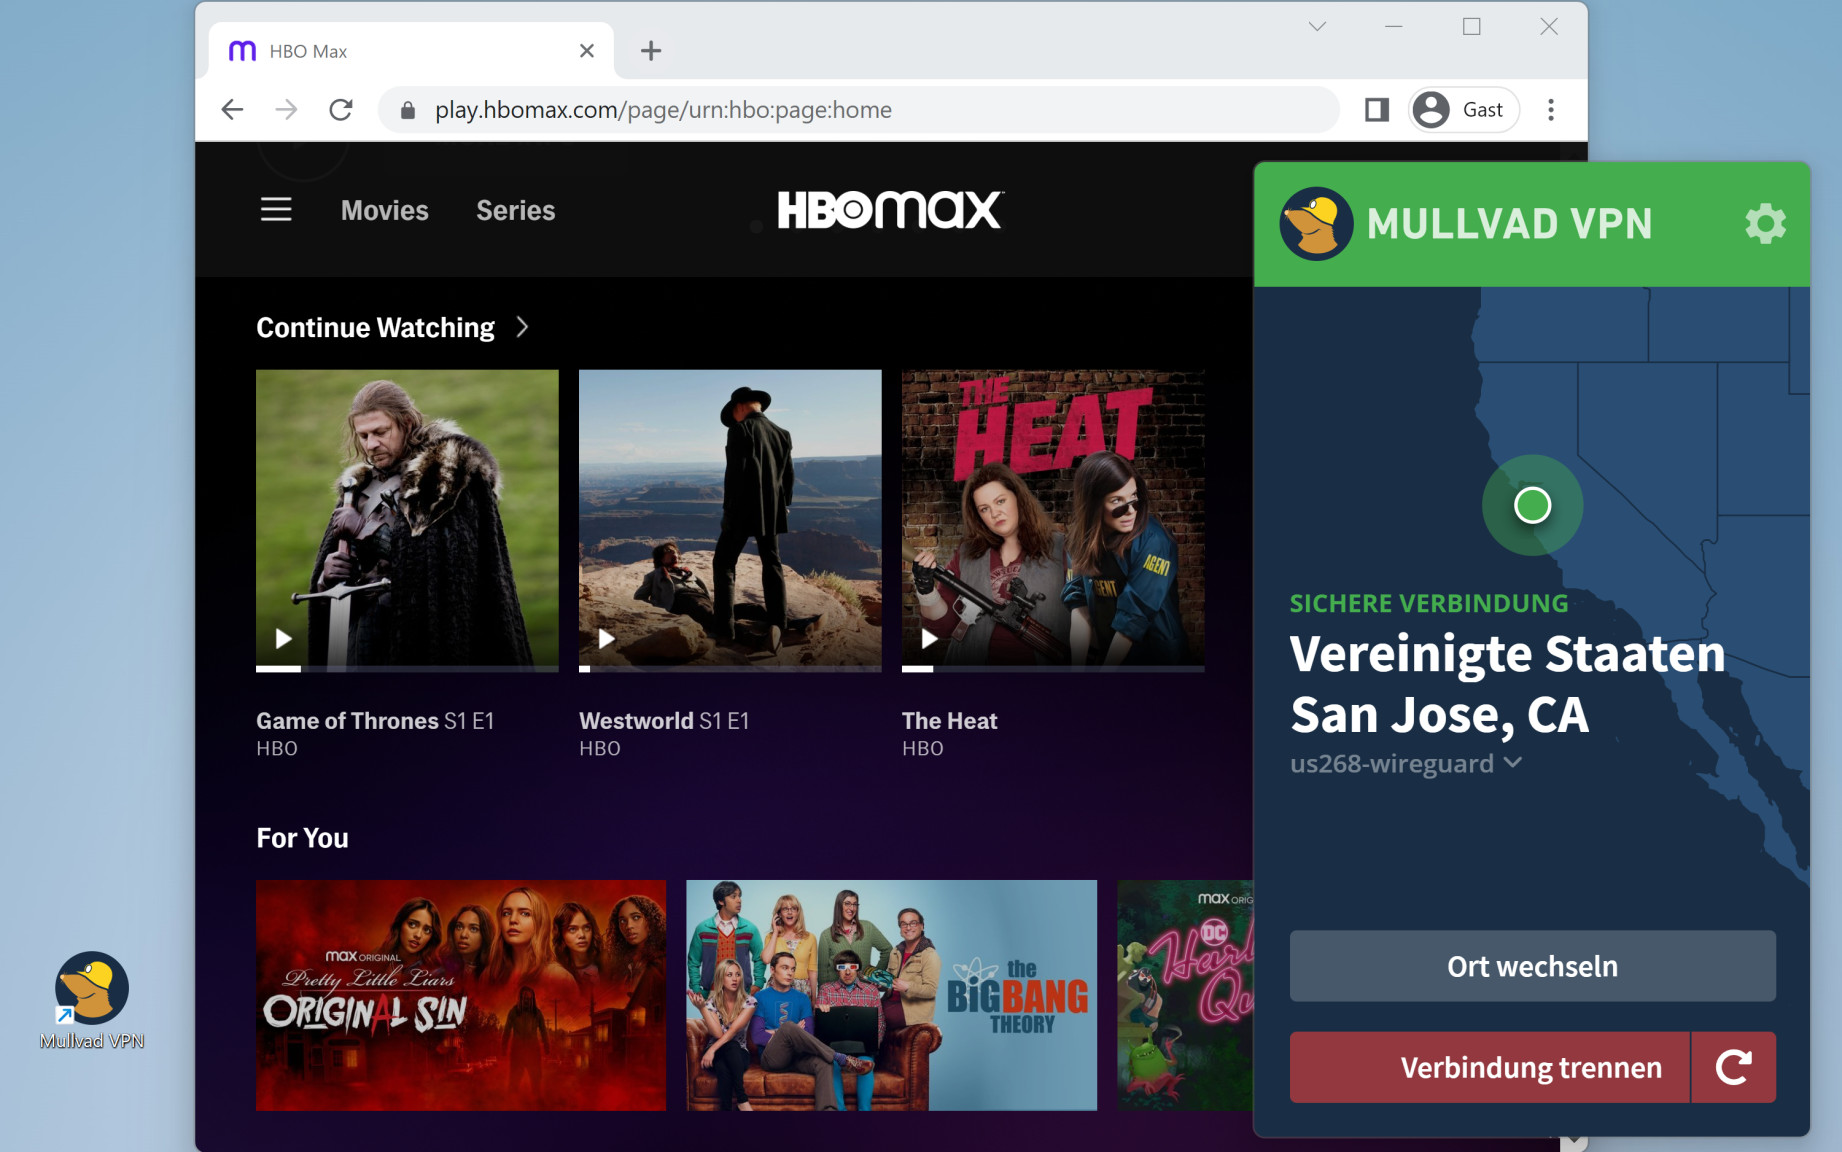 Mullvad VPN mit HBO Max